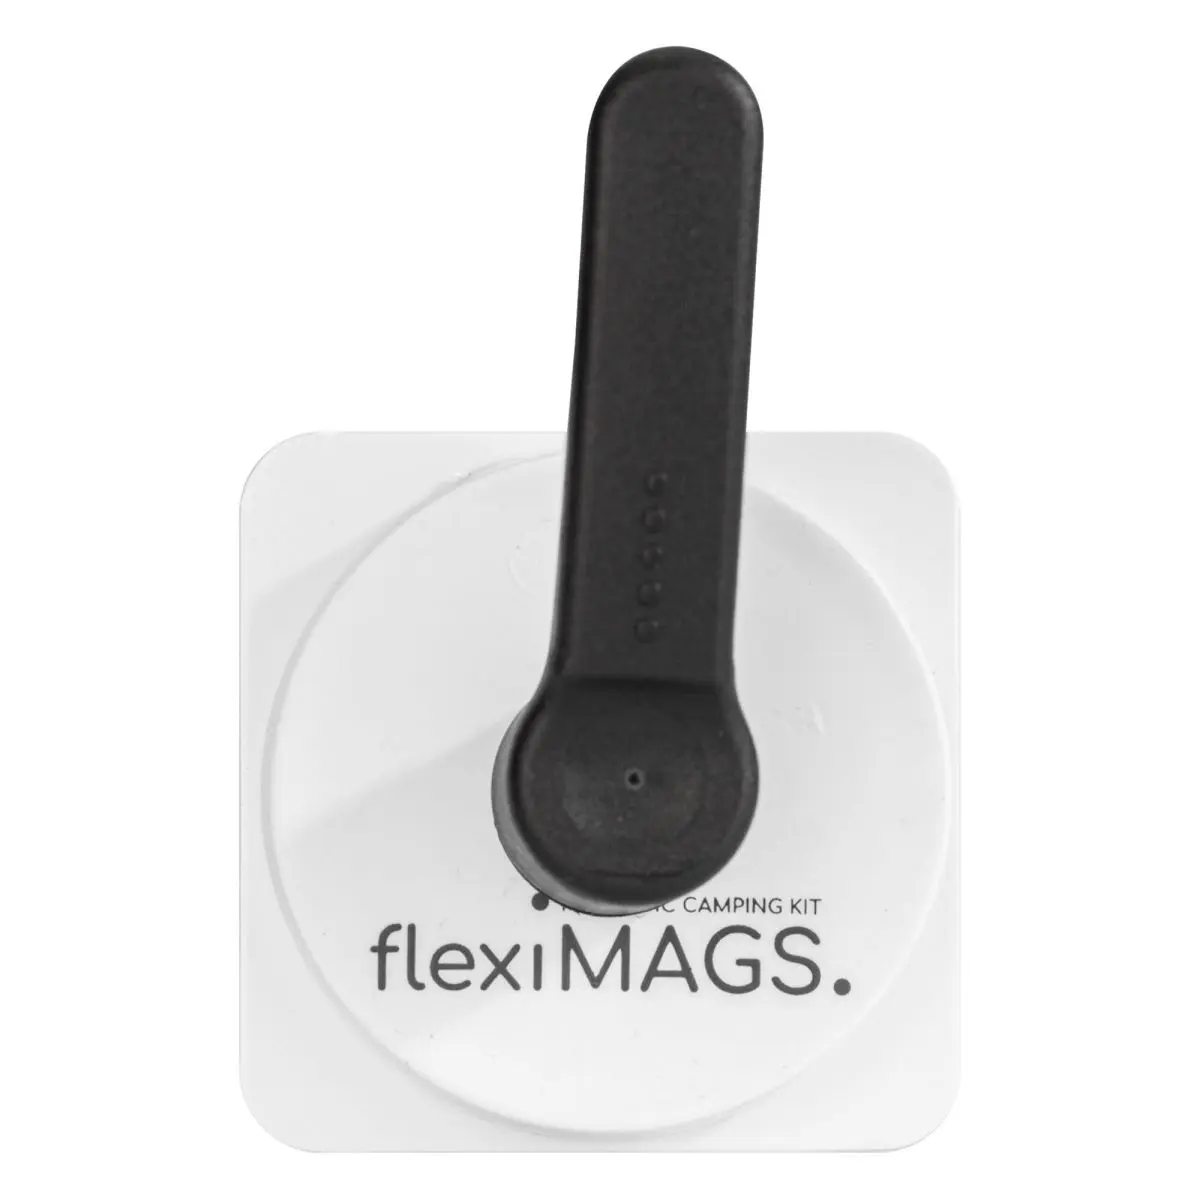 Handtuchhalter-Set flexiMAGS - wei